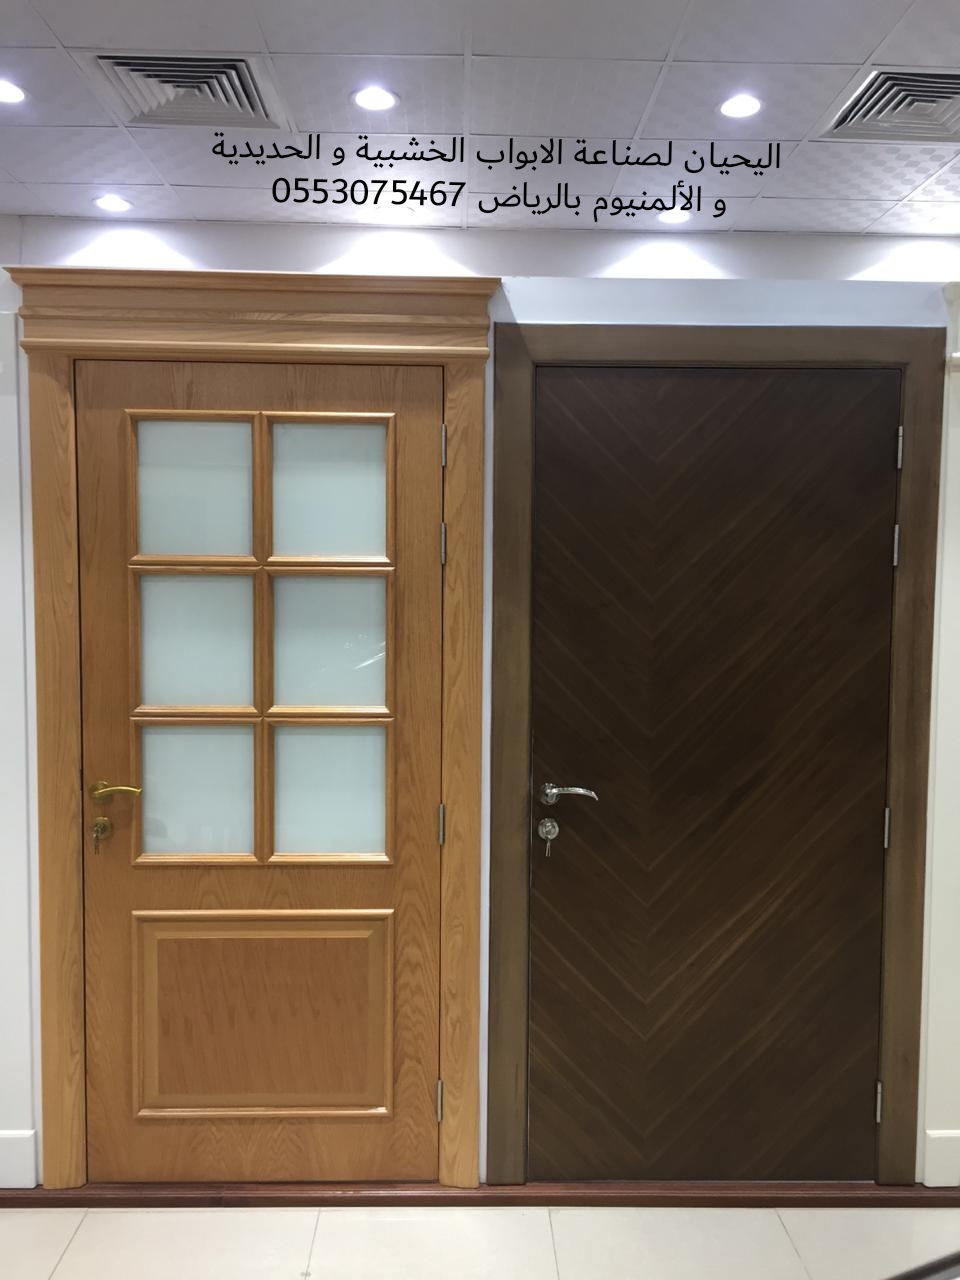 اليحيان مصنع أبواب خشبيه وحديديه والمنيوم في الرياض 0553075467 أبواب خشب خارجيه بالرياض P_1550lxs567